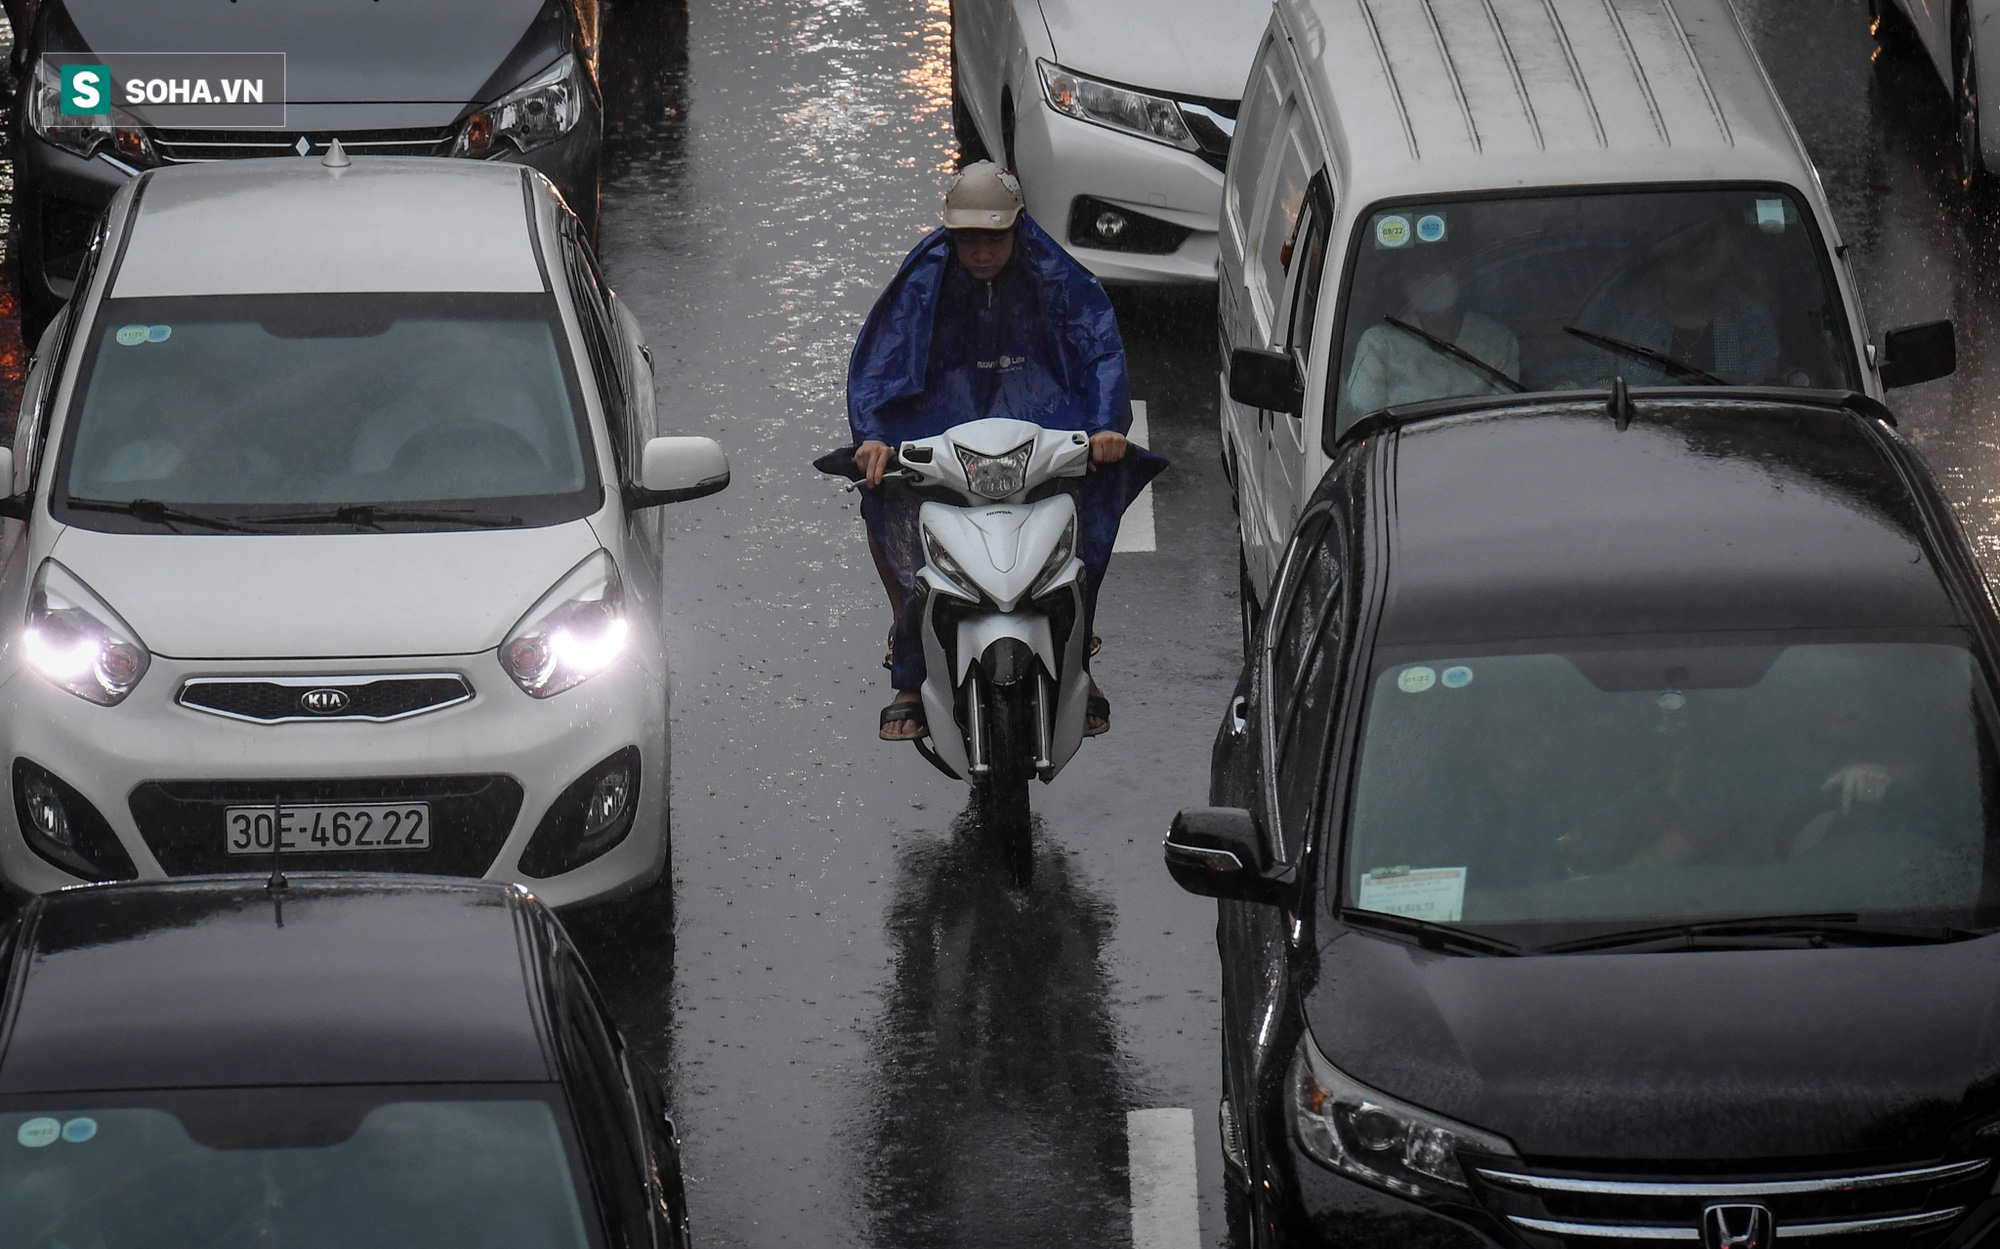 Đường phố Hà Nội tắc cứng trong mưa sáng đầu tuần, ô tô dàn hàng 6 chiếm hết lòng đường - Ảnh 2.